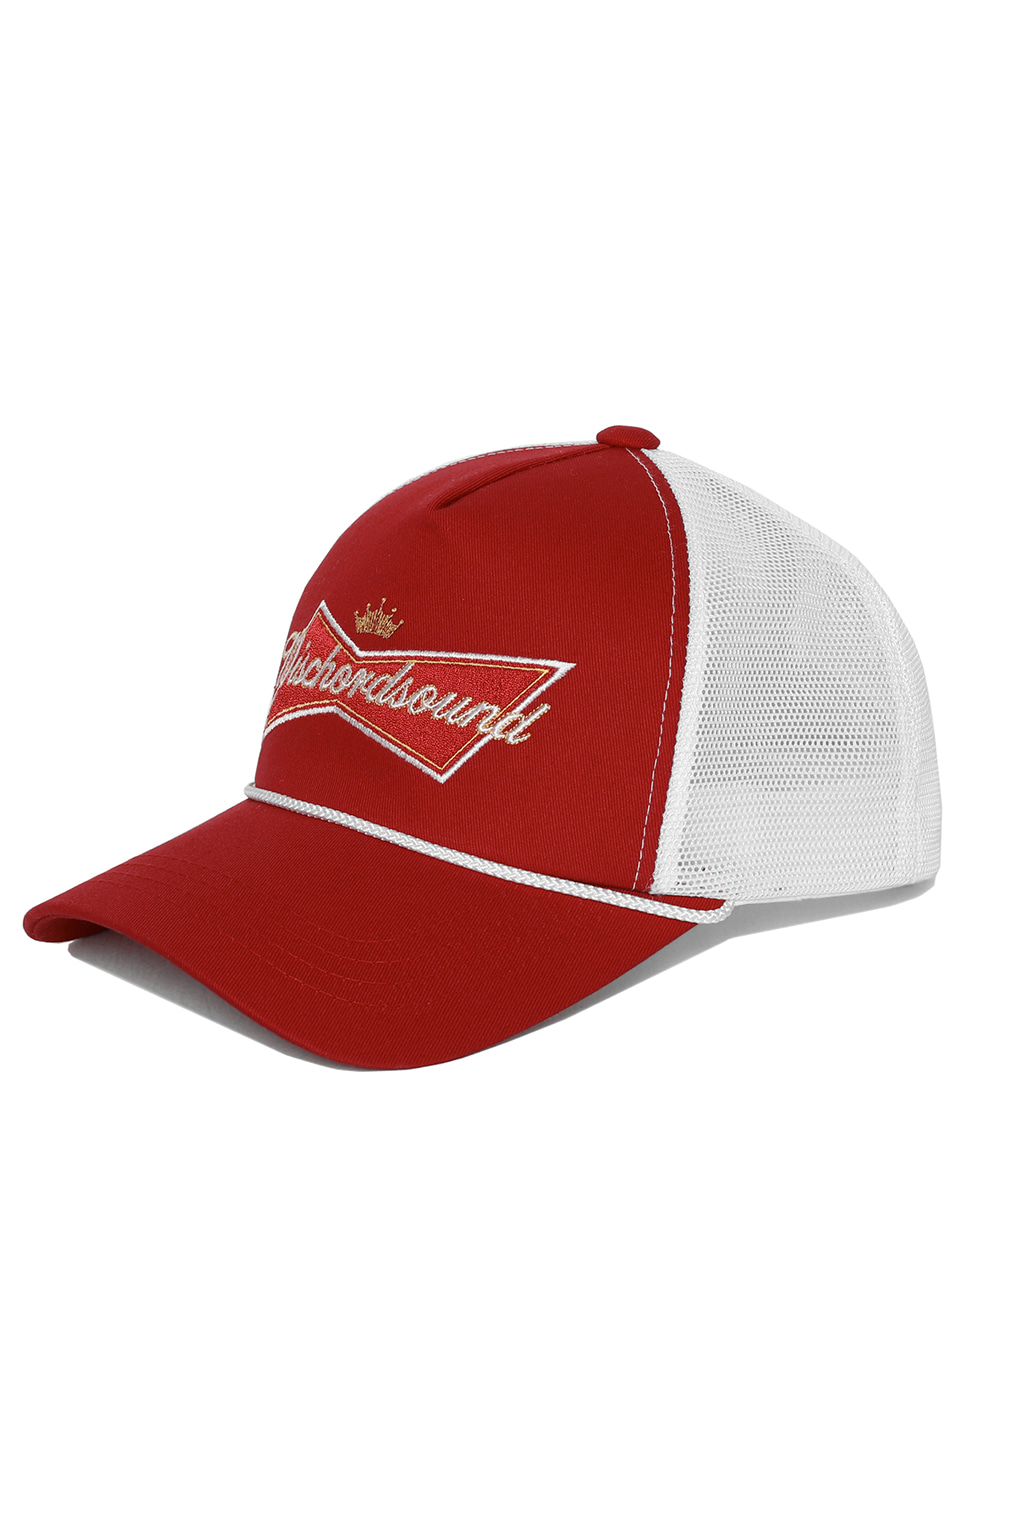 PARODY TRUCKER CAP [RED/WHITE]